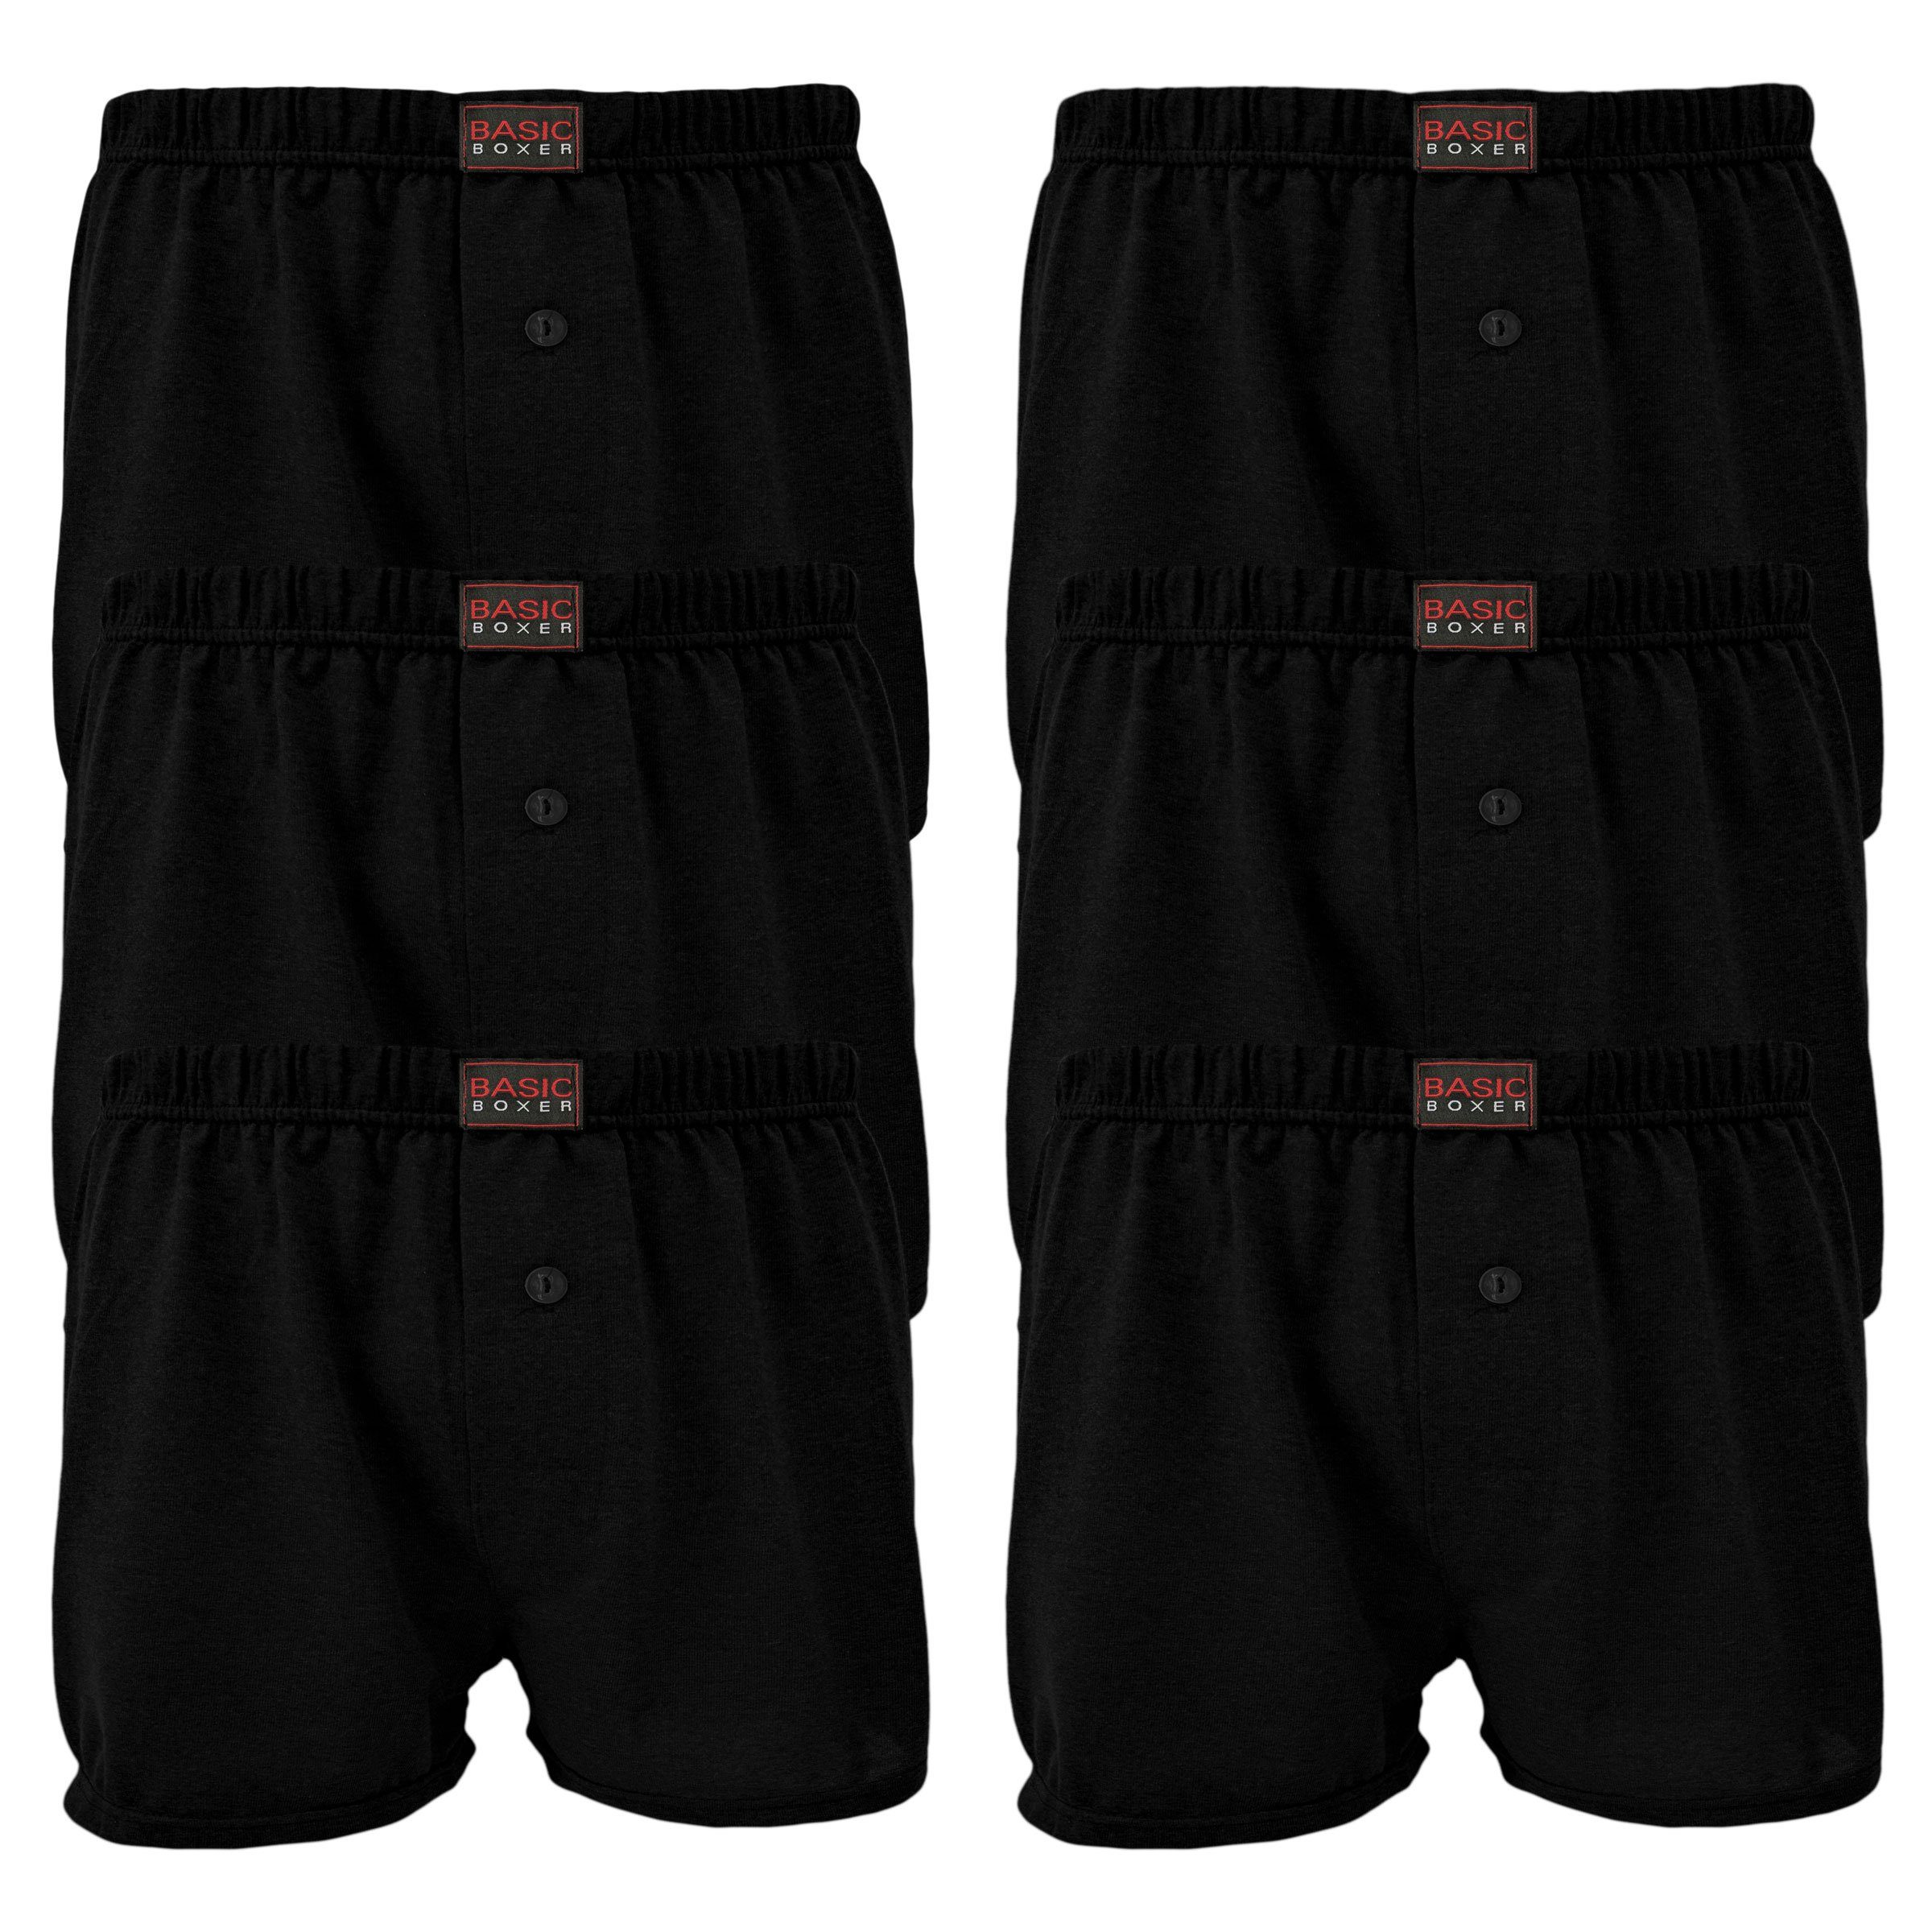 OriginalYou Boxershorts Herren Boxershorts bequeme und moderne Herren Unterhosen dünn & leicht (6er Pack) super leichtes Jersey-Gewebe (zeichnet sich nicht ab) 6 x Schwarz